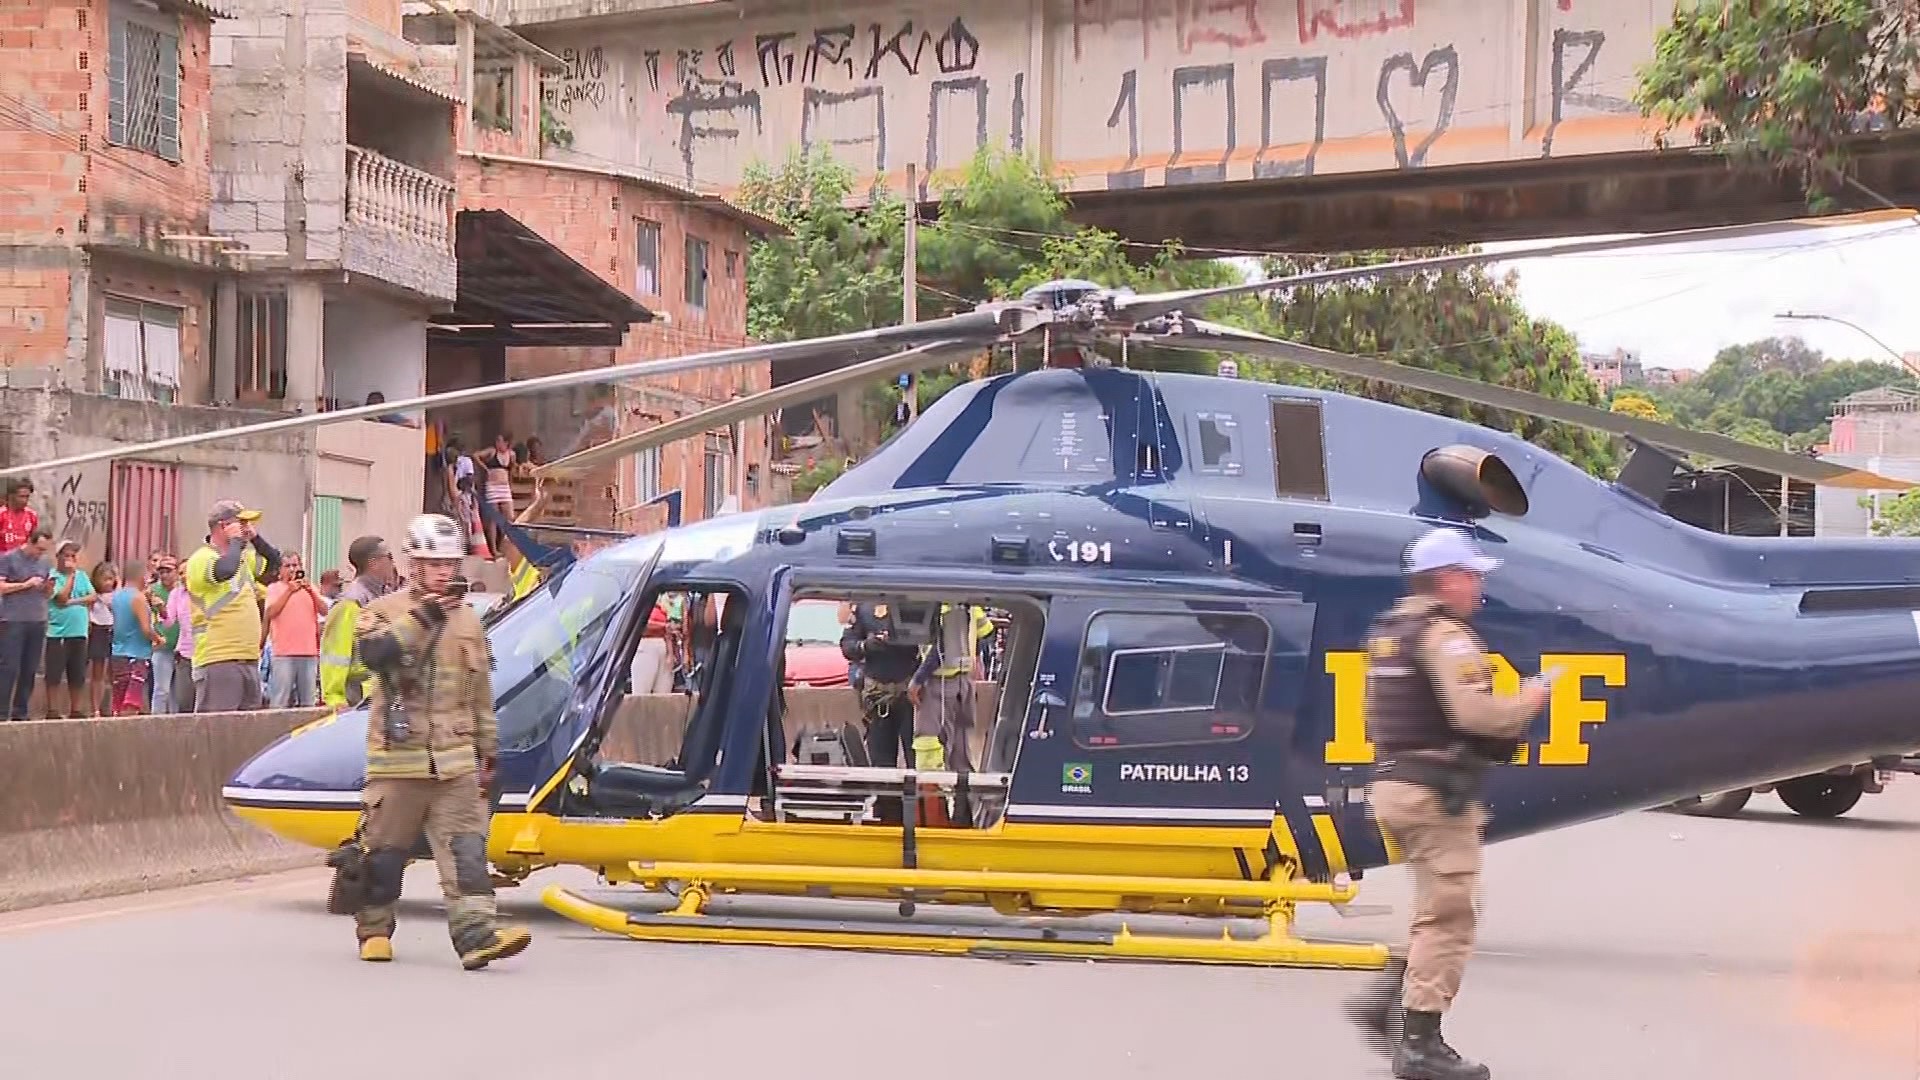 Helicóptero que fez pouso forçado em BH teve 'perda súbita de rotação', afirma PRF